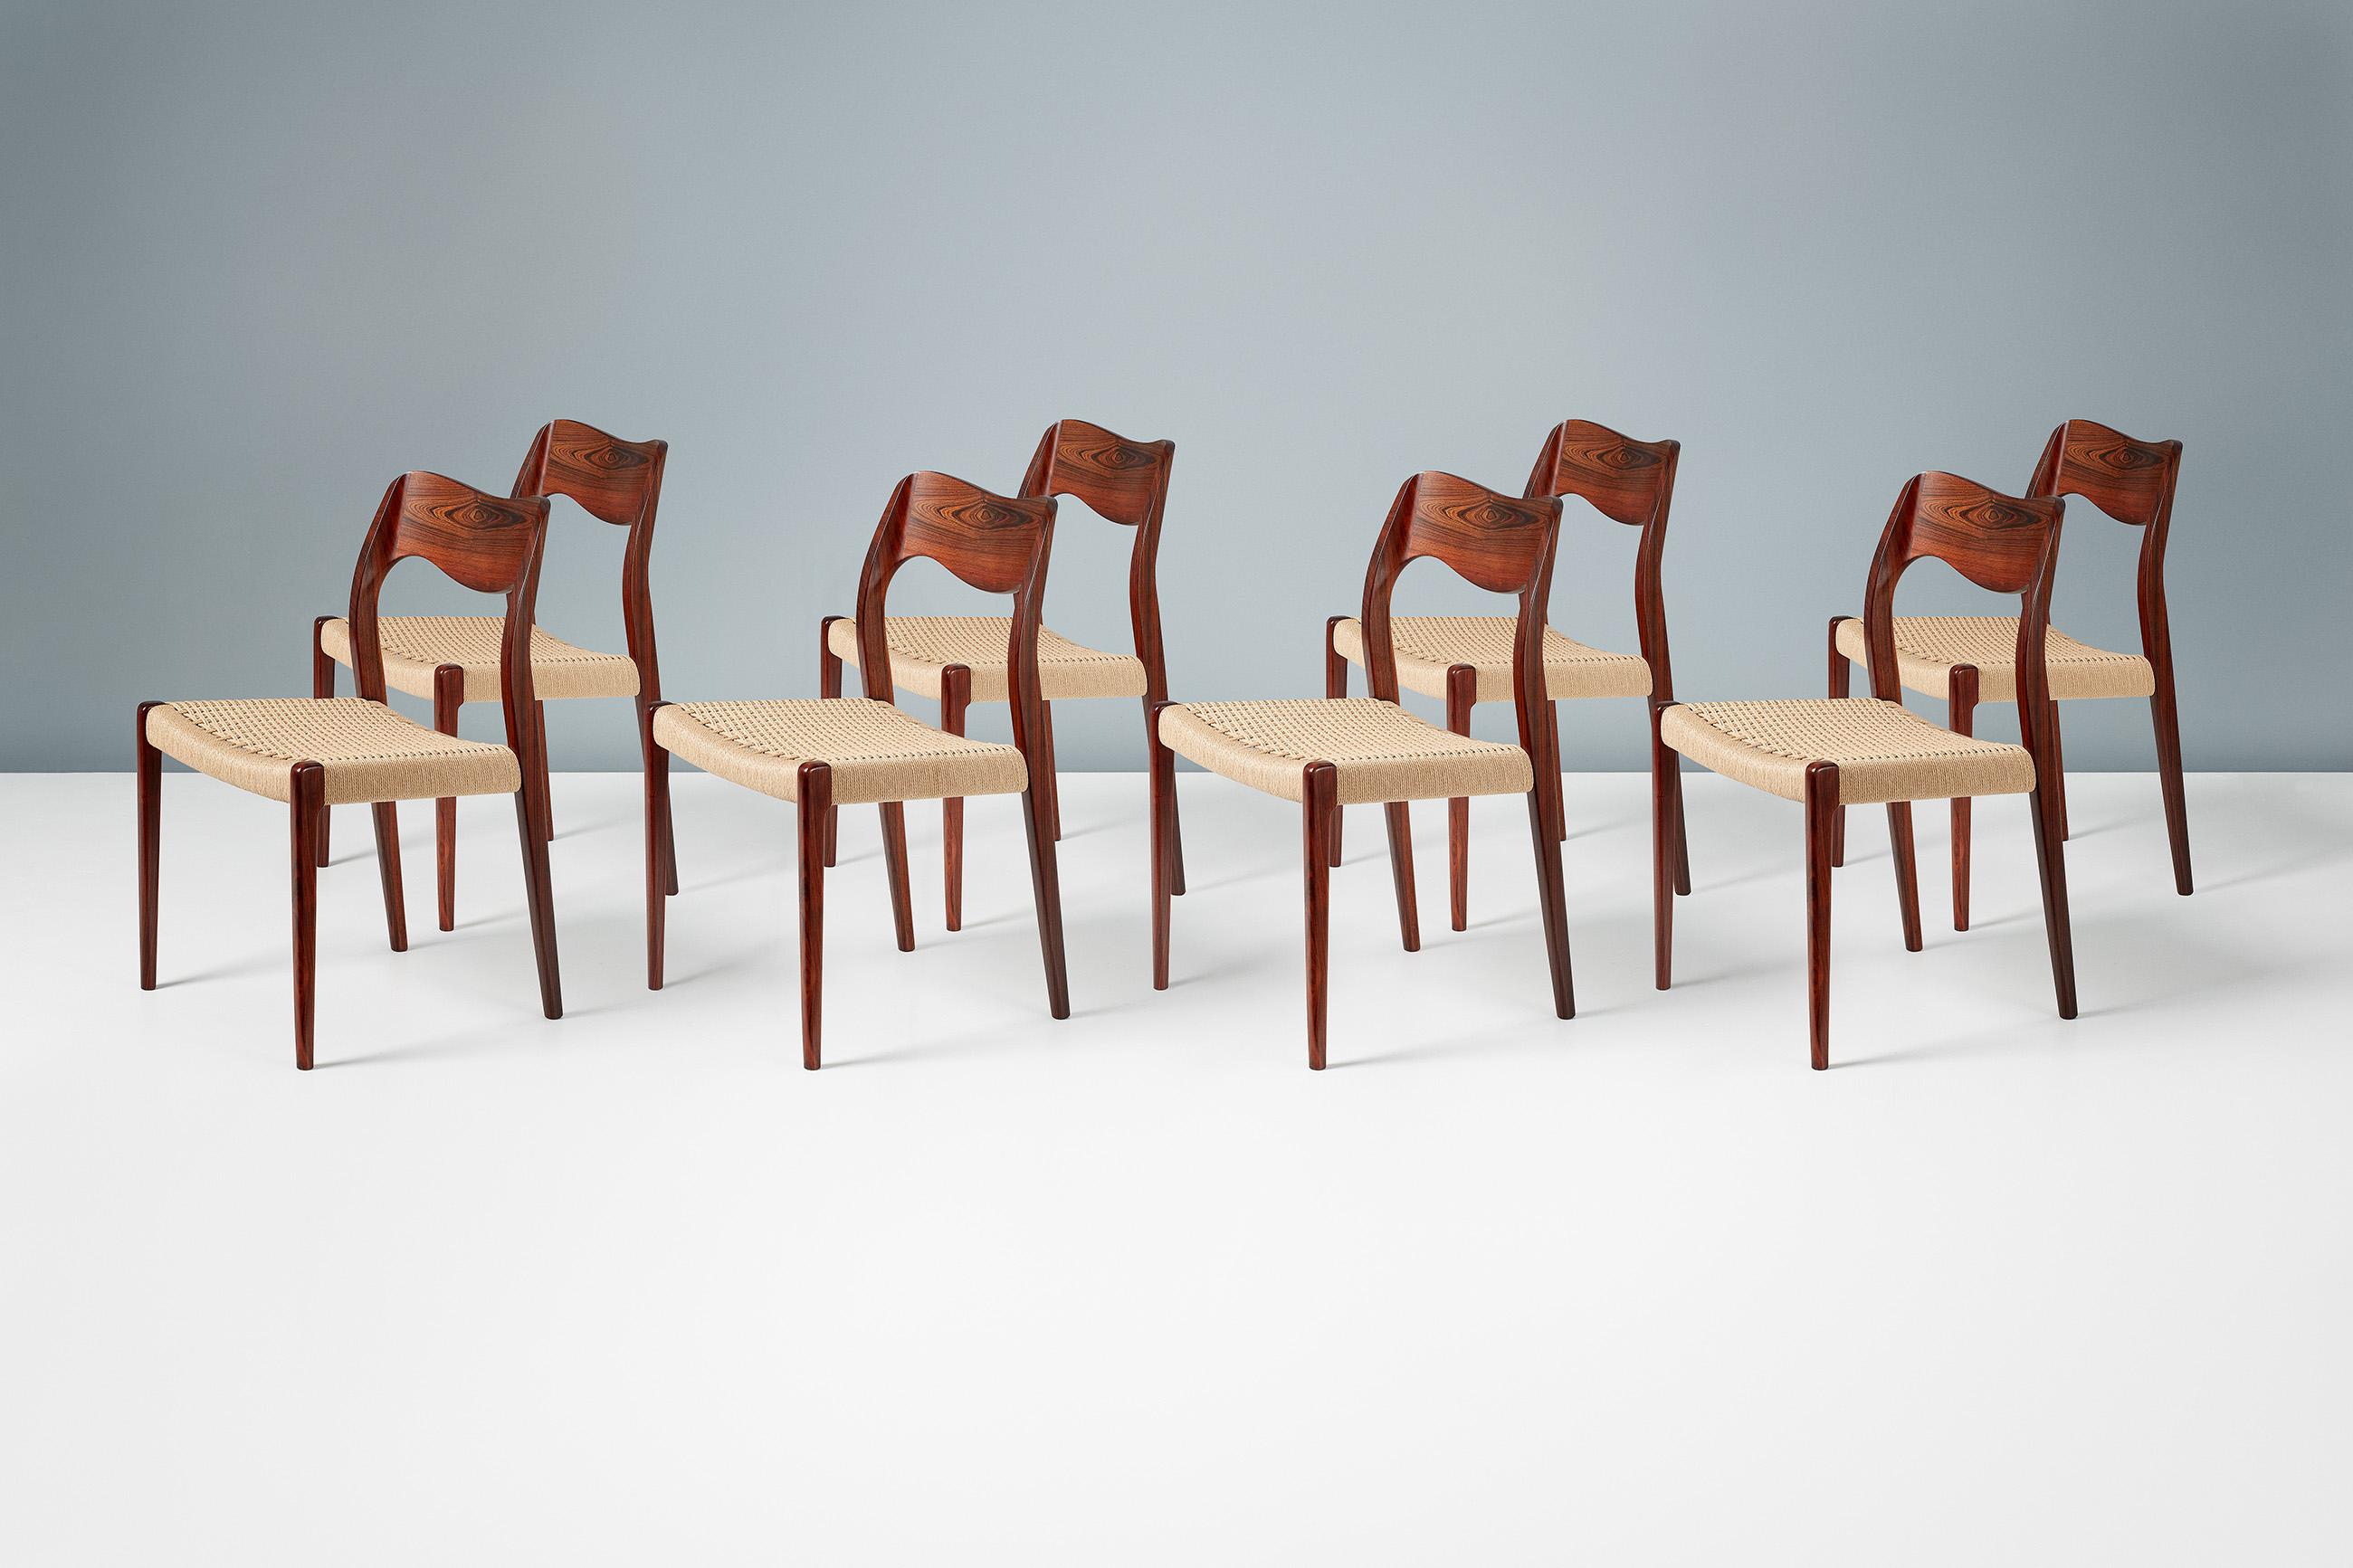 Niels O. Møller

Esszimmerstühle Modell 71, 1951

Satz von 8 Esszimmerstühlen aus Palisanderholz, entworfen von Niels O. Moller für seine eigene Firma J.L. Moller Mobelfabrik, Dänemark. Das Modell 71 war einer der ersten Entwürfe von Moller und